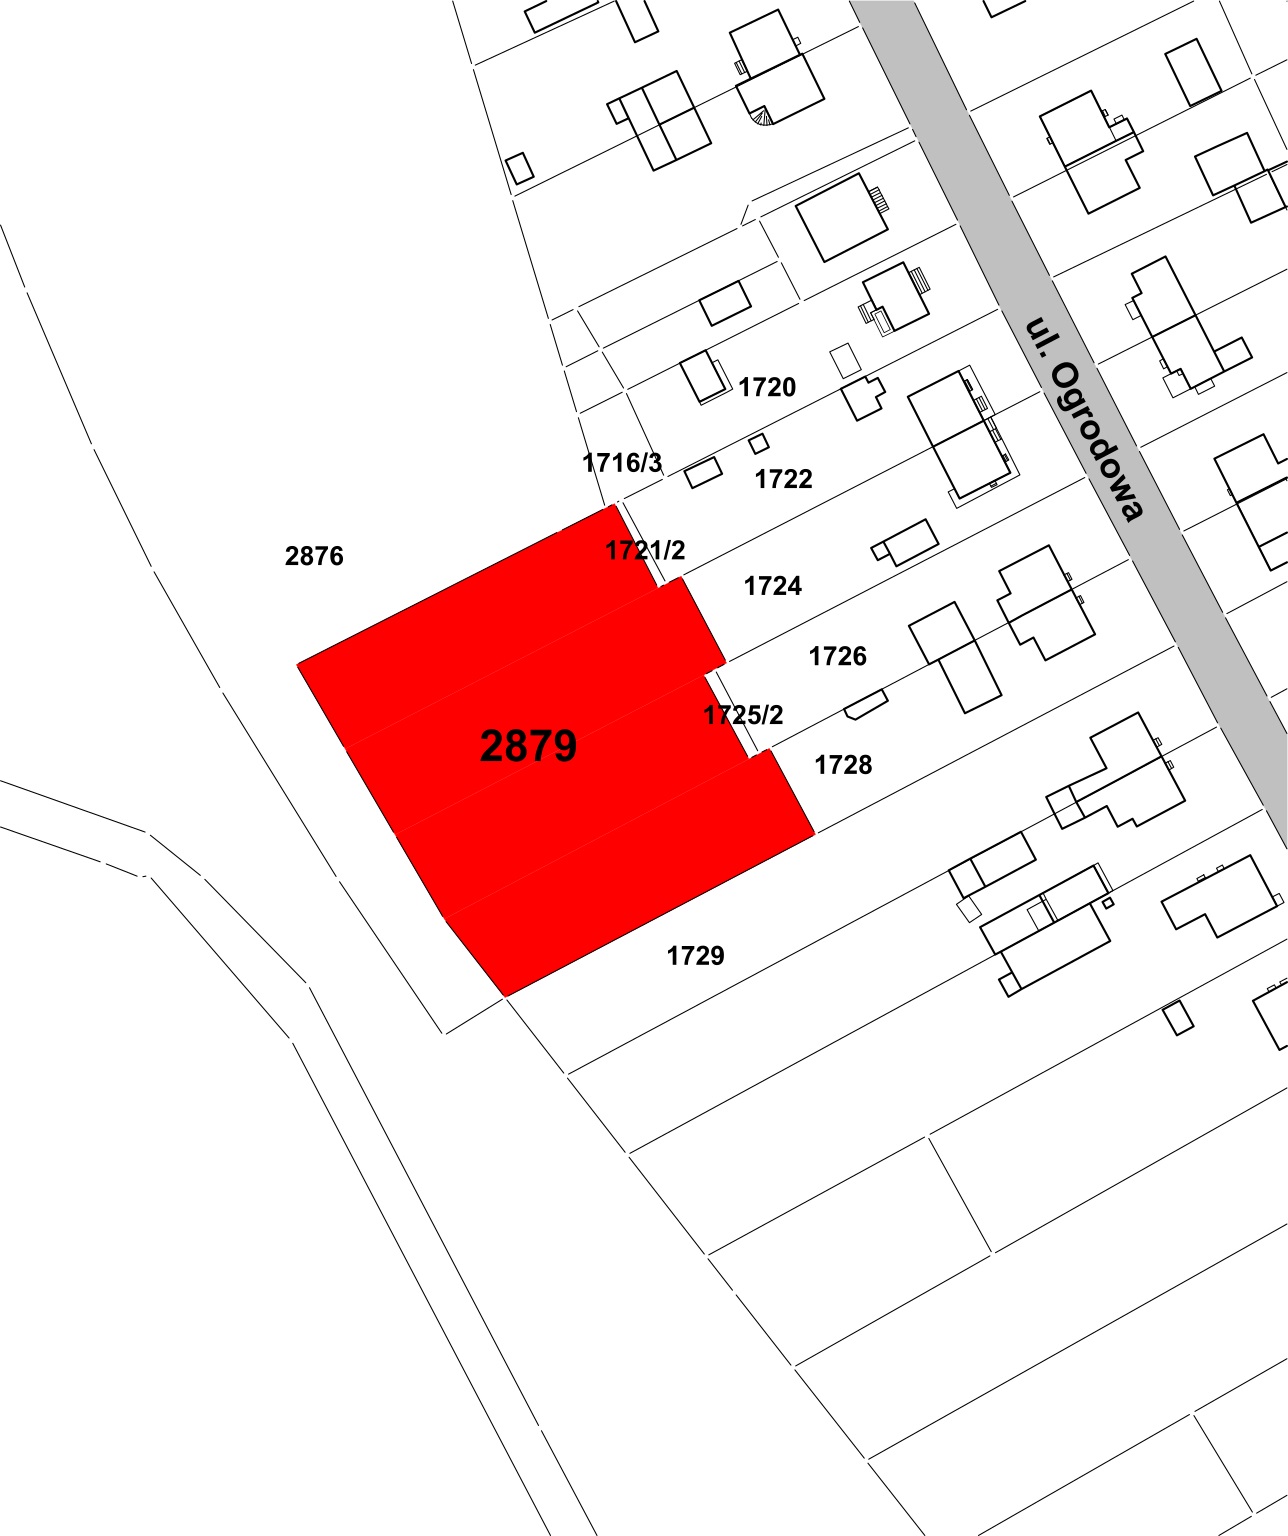 Ogłoszenie o pierwszym przetargu ustnym ograniczonym na sprzedaż nieruchomości gruntowej niezabudowanej, oznaczonej nr 2879, położonej w Ełku przy ul. Ogrodowej, o obszarze 0,3528 ha